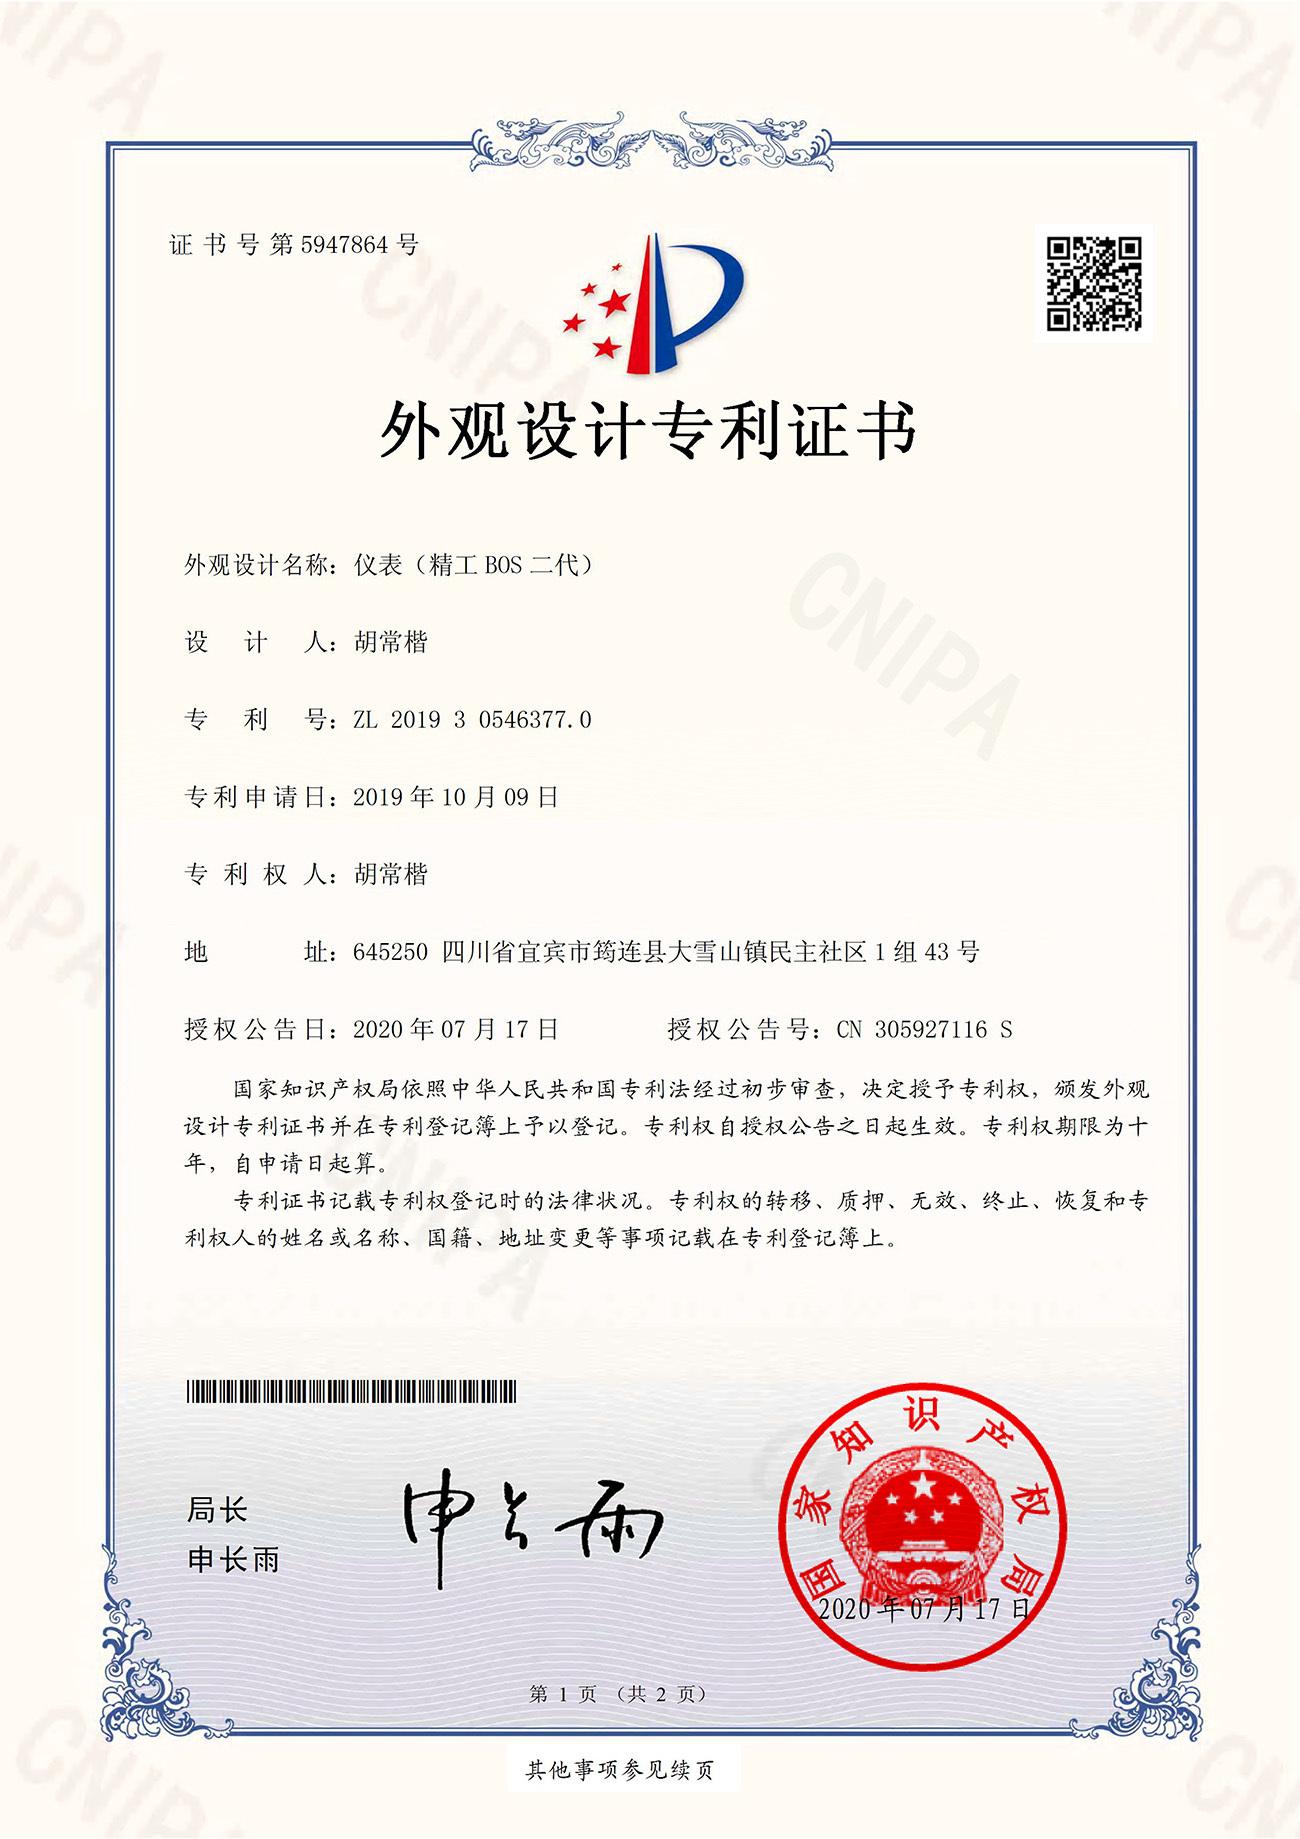 Certificate-Hu Changkai Instrument (Seiko BOS II)(1)